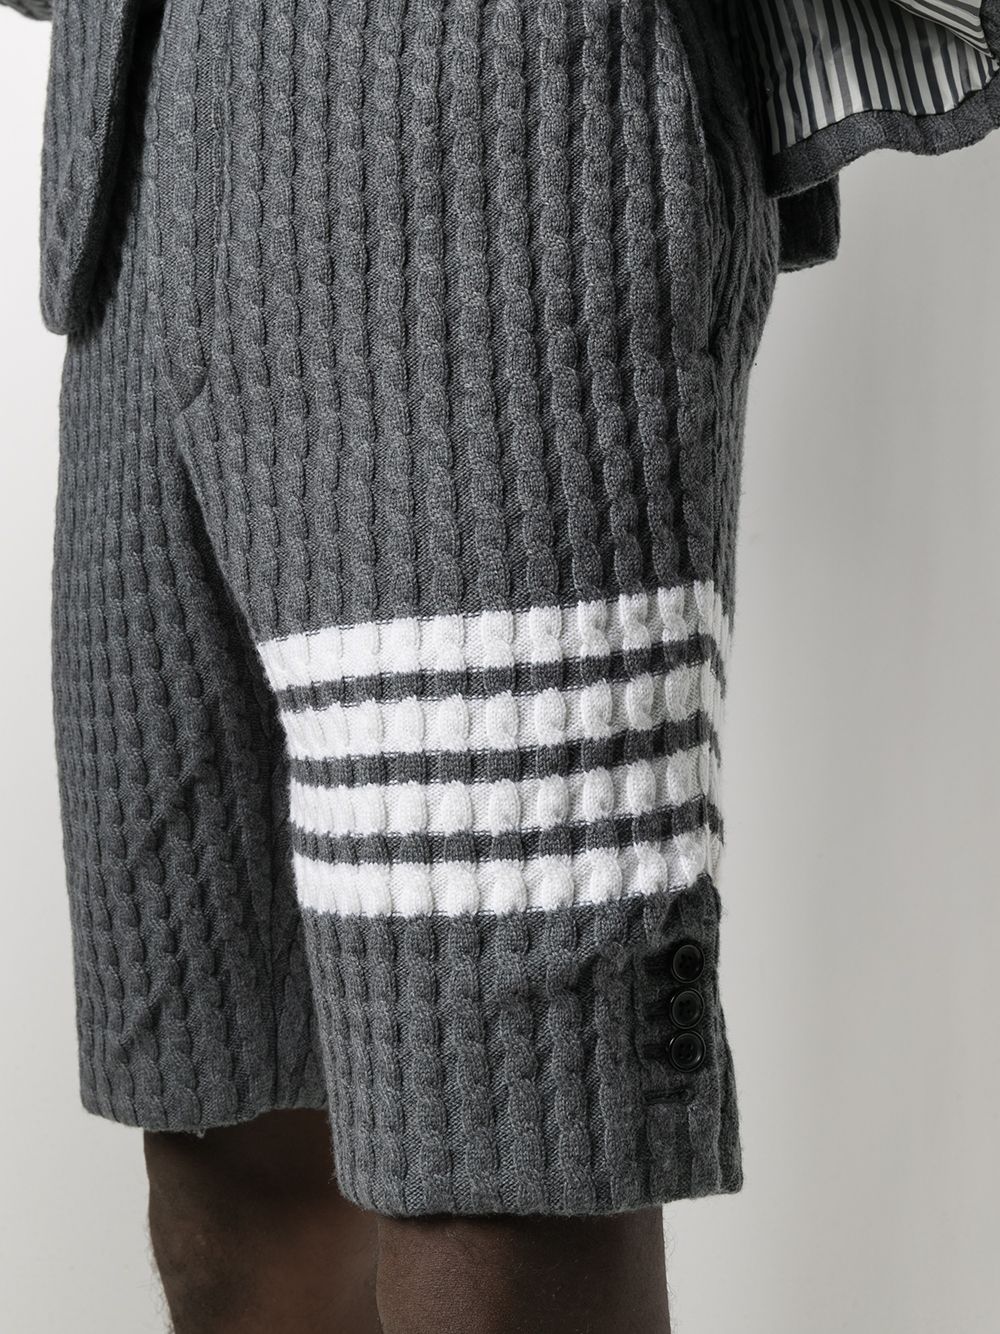 фото Thom browne фактурные шорты с полосками 4-bar